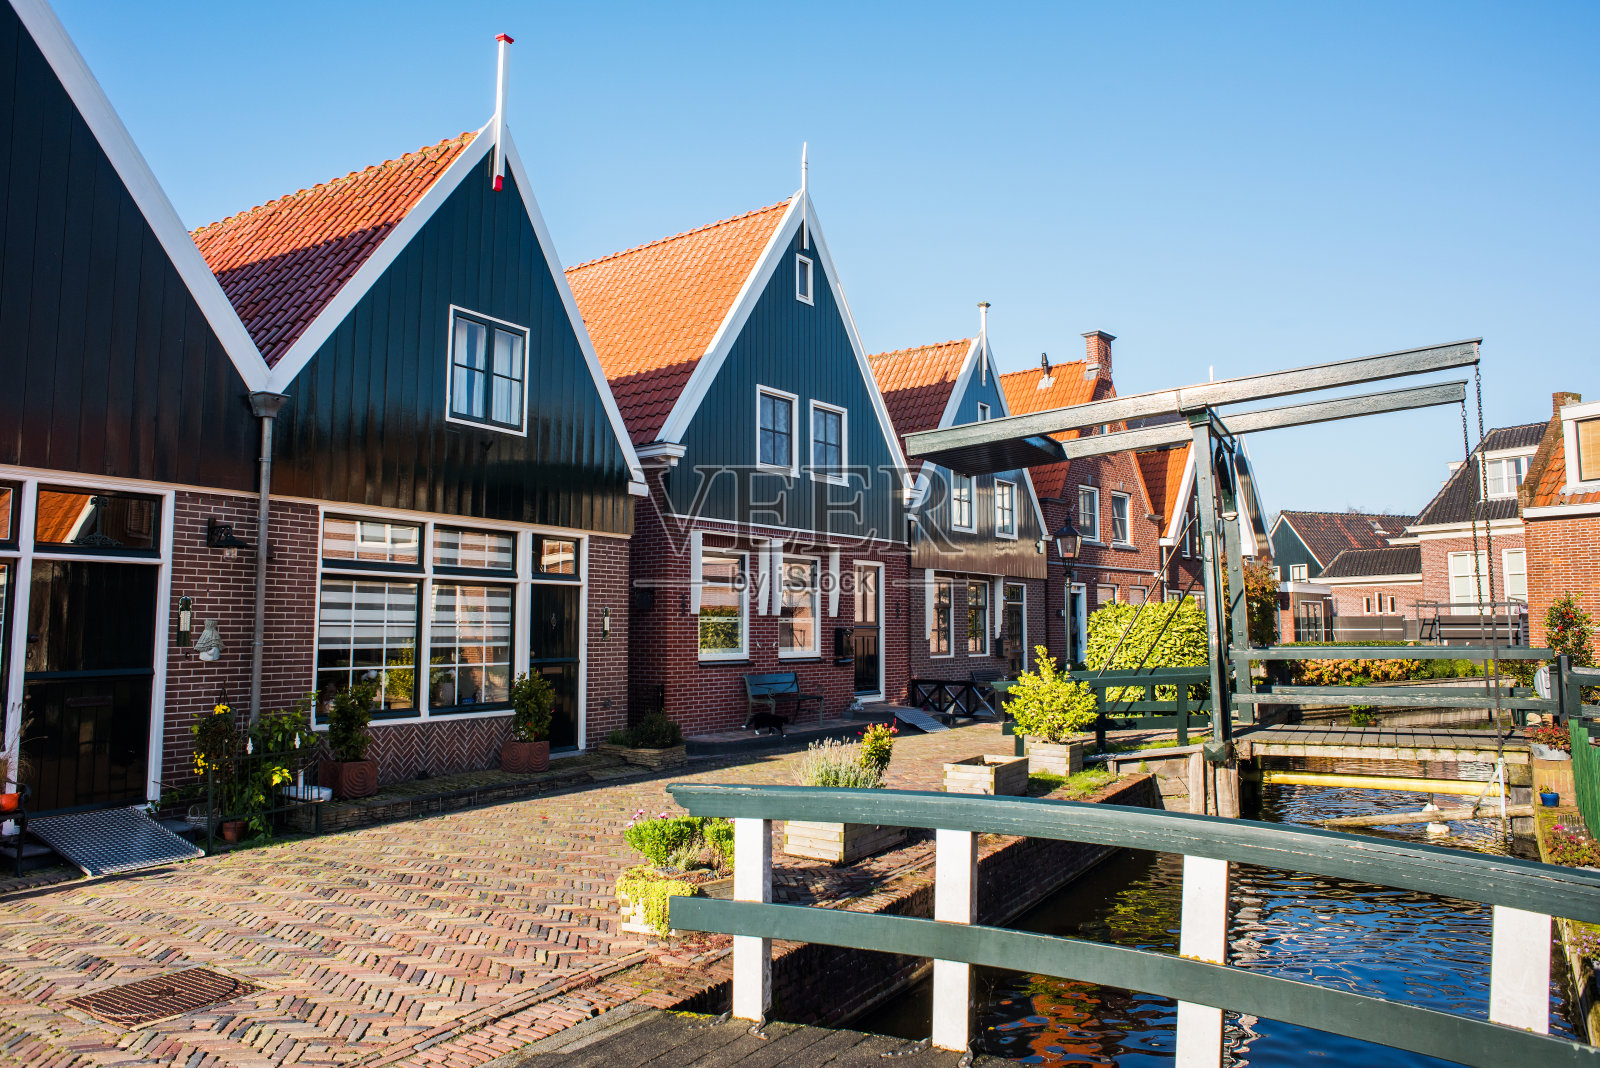 Volendam村,荷兰照片摄影图片